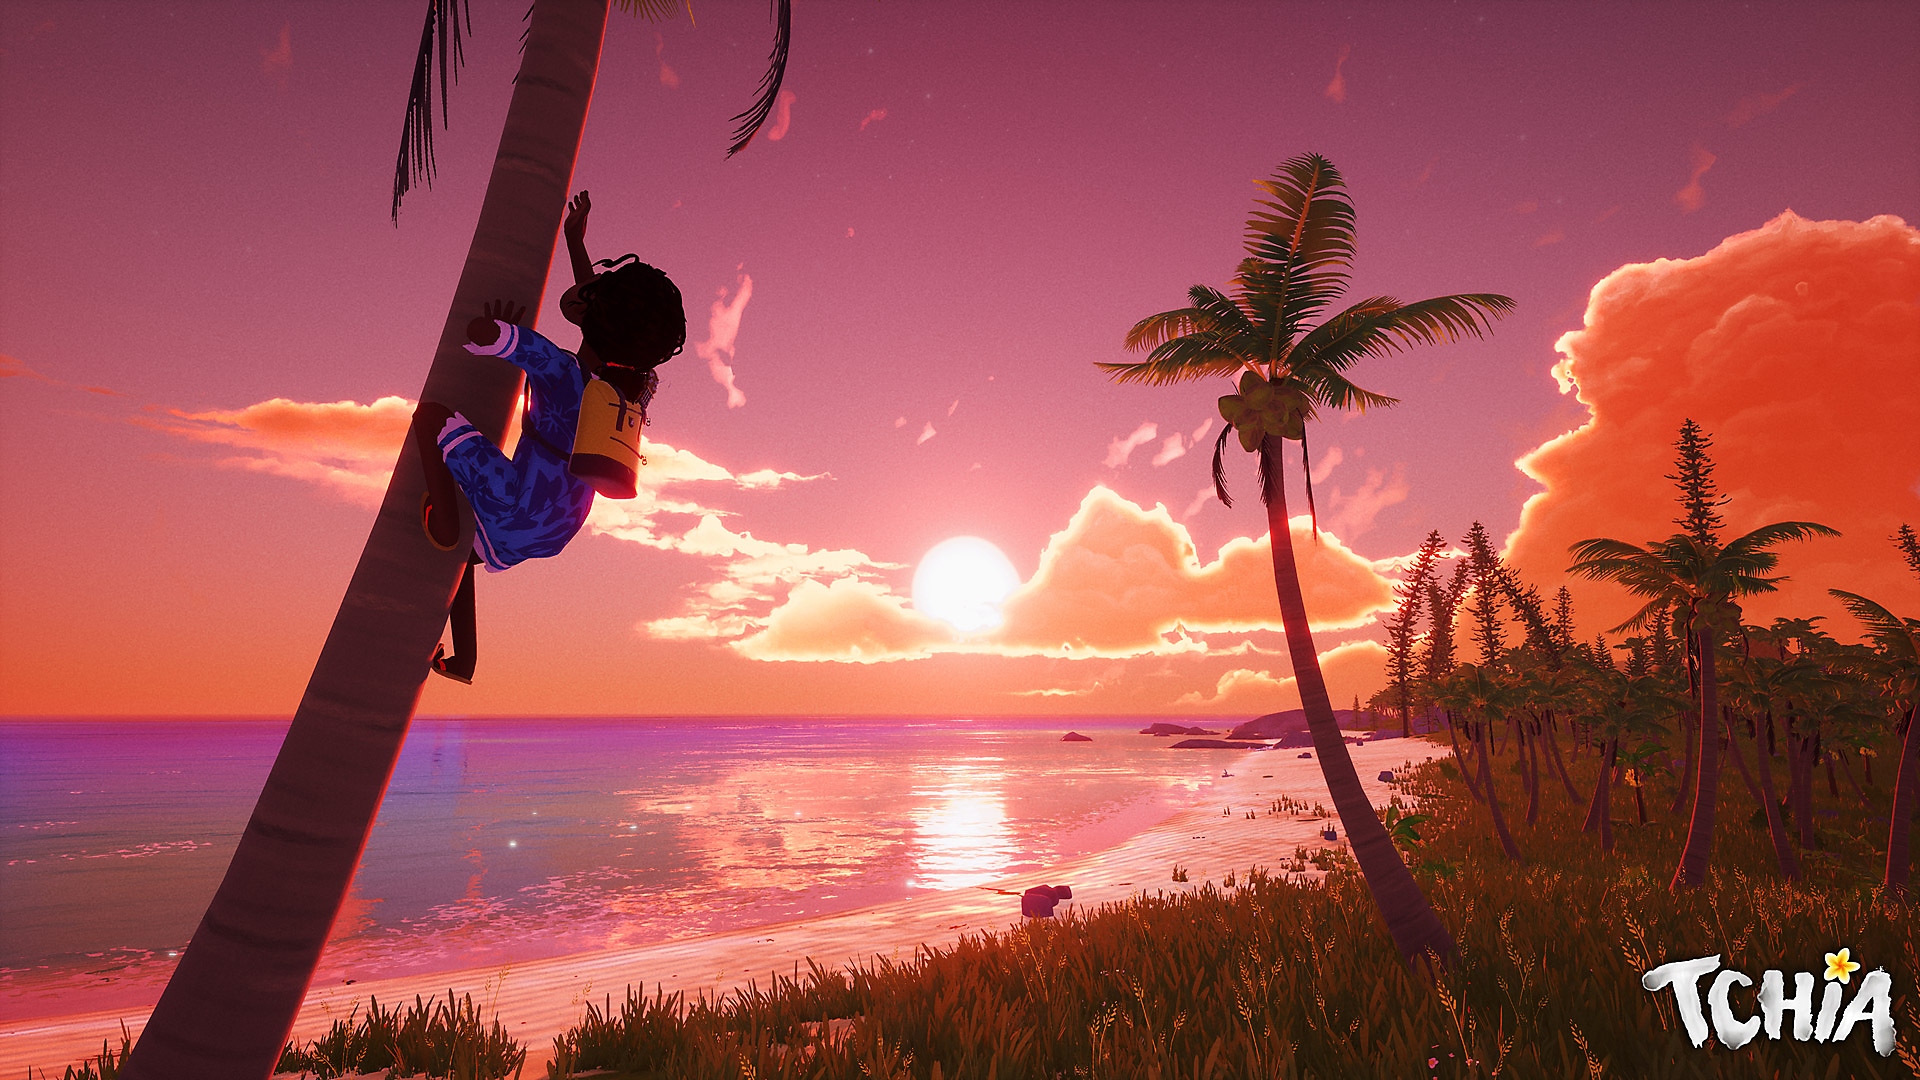 Capture d'écran de Tchia montrant le personnage principal en train de grimper à un arbre sur fond d'un magnifique coucher de soleil